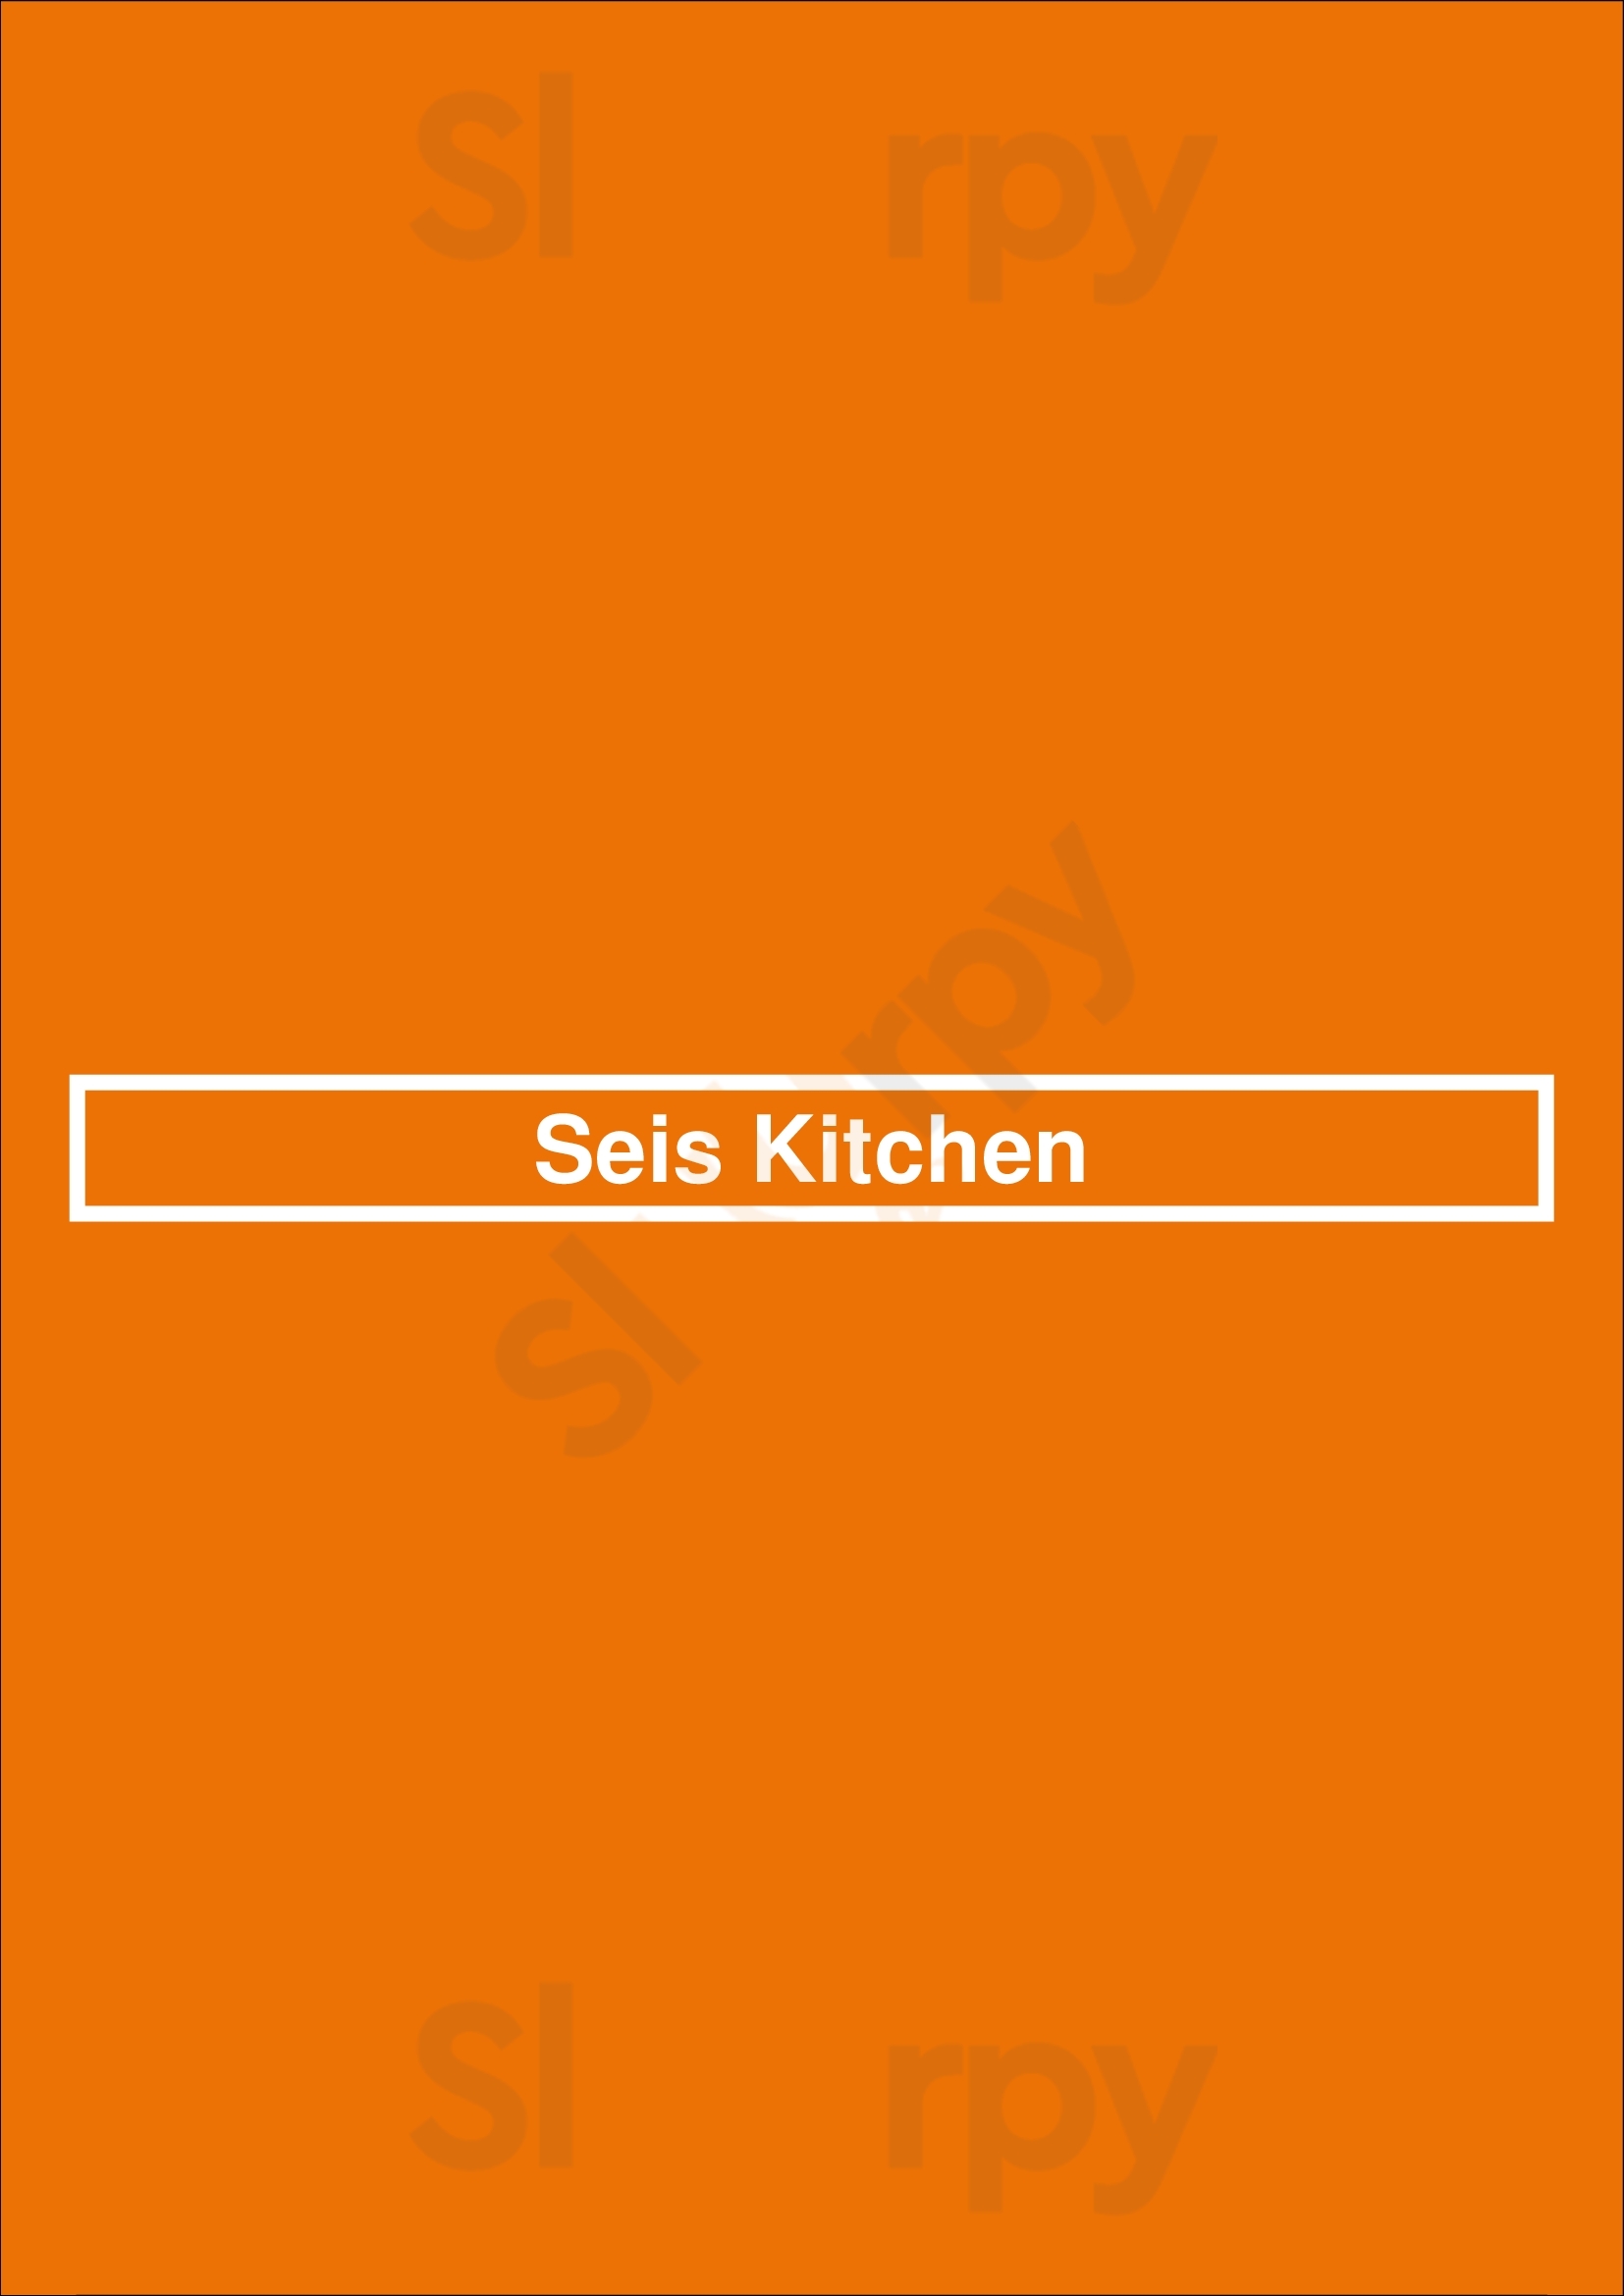 Seis Kitchen Tucson Menu - 1